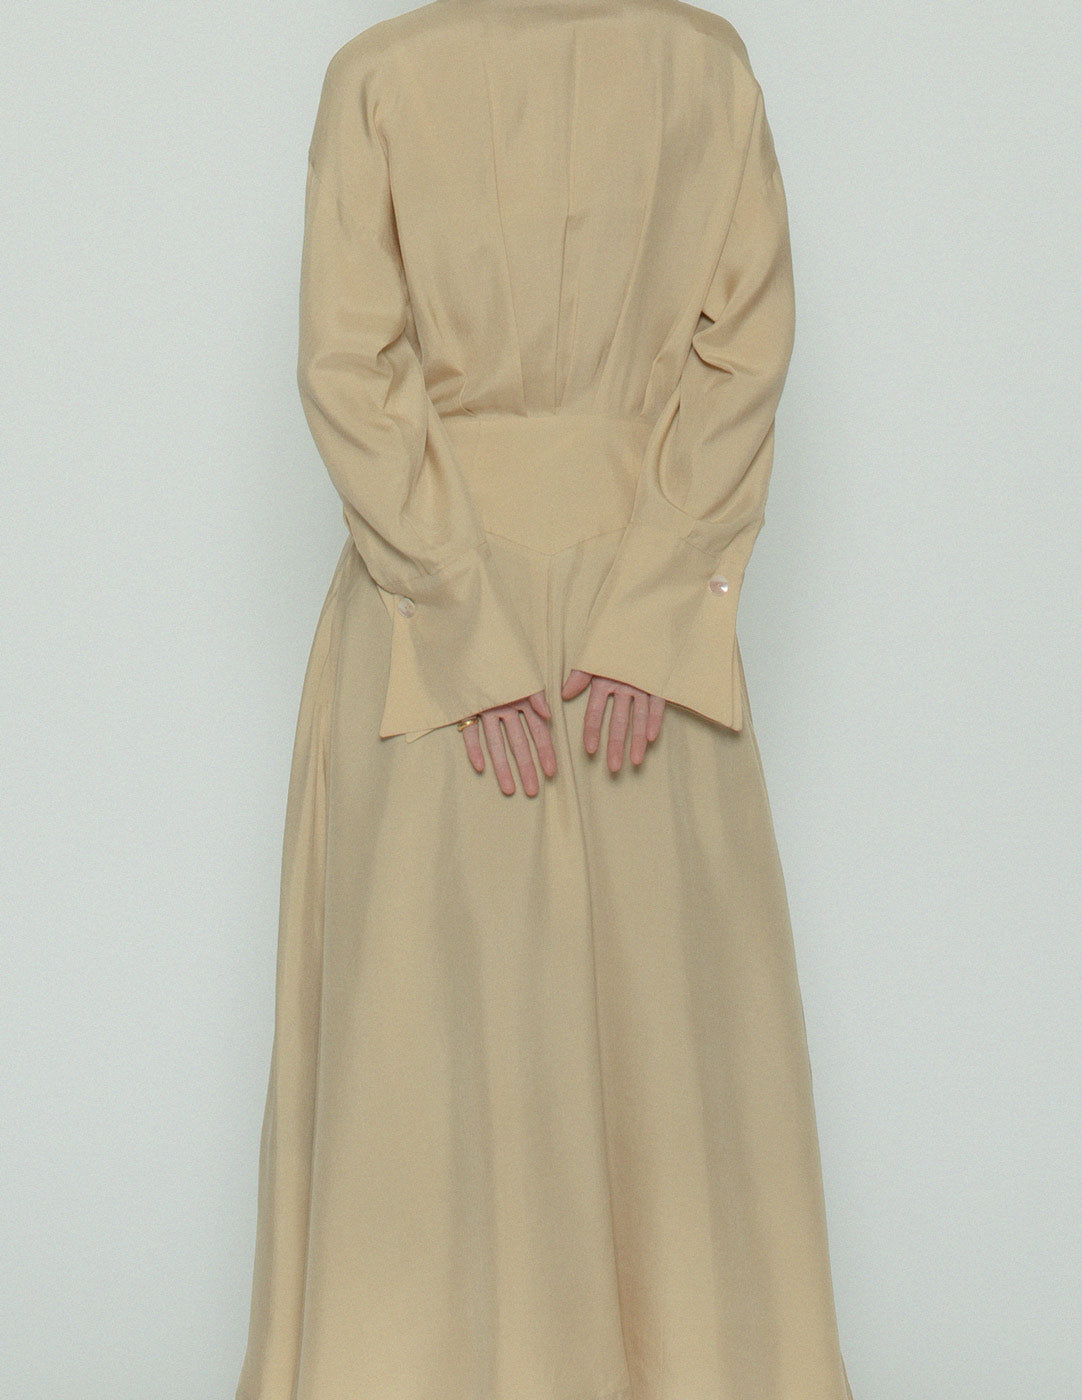 Emmanuelle Khanh vintage buttoned shirt dress back detail